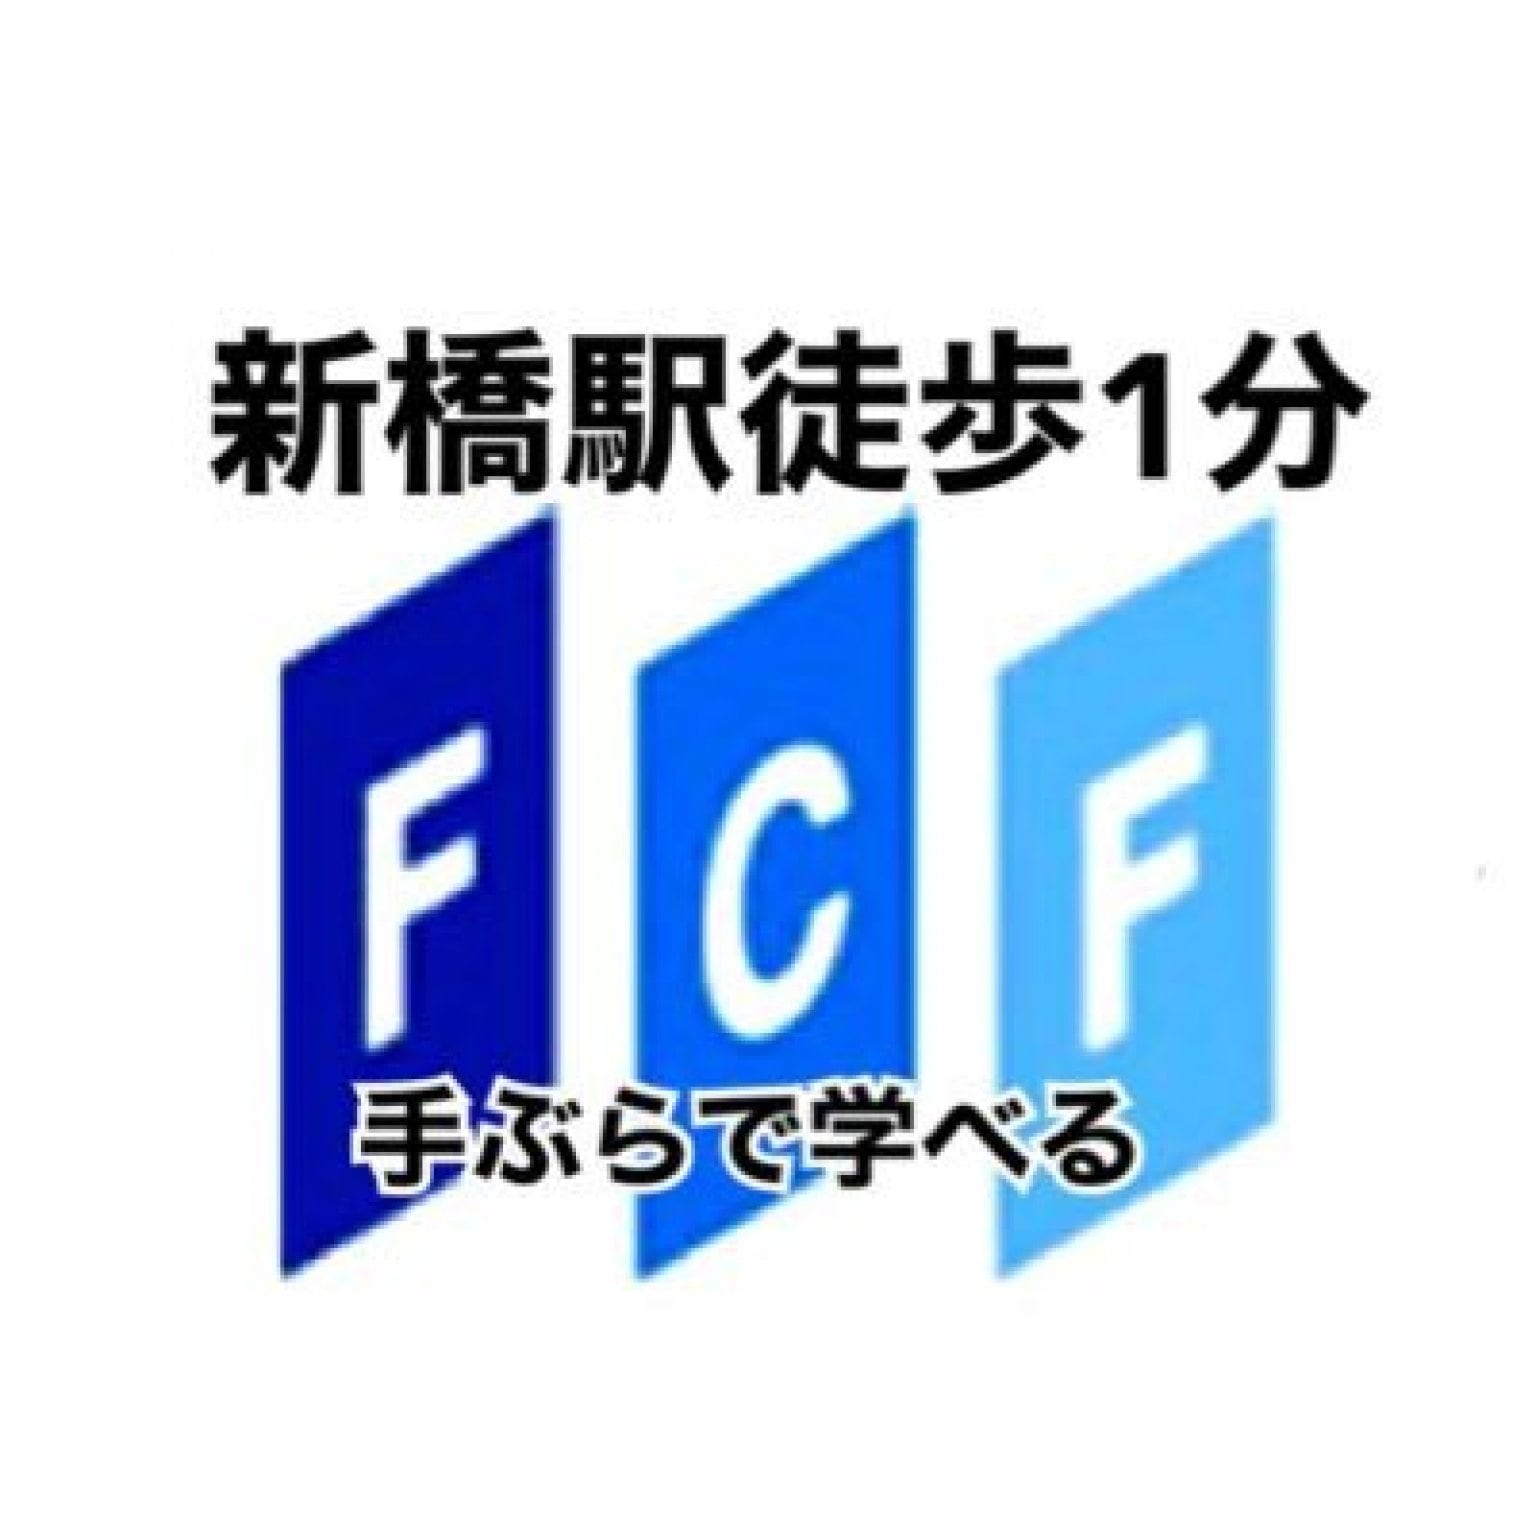 FCF FRIENDSHIP LIVE 入場チケット